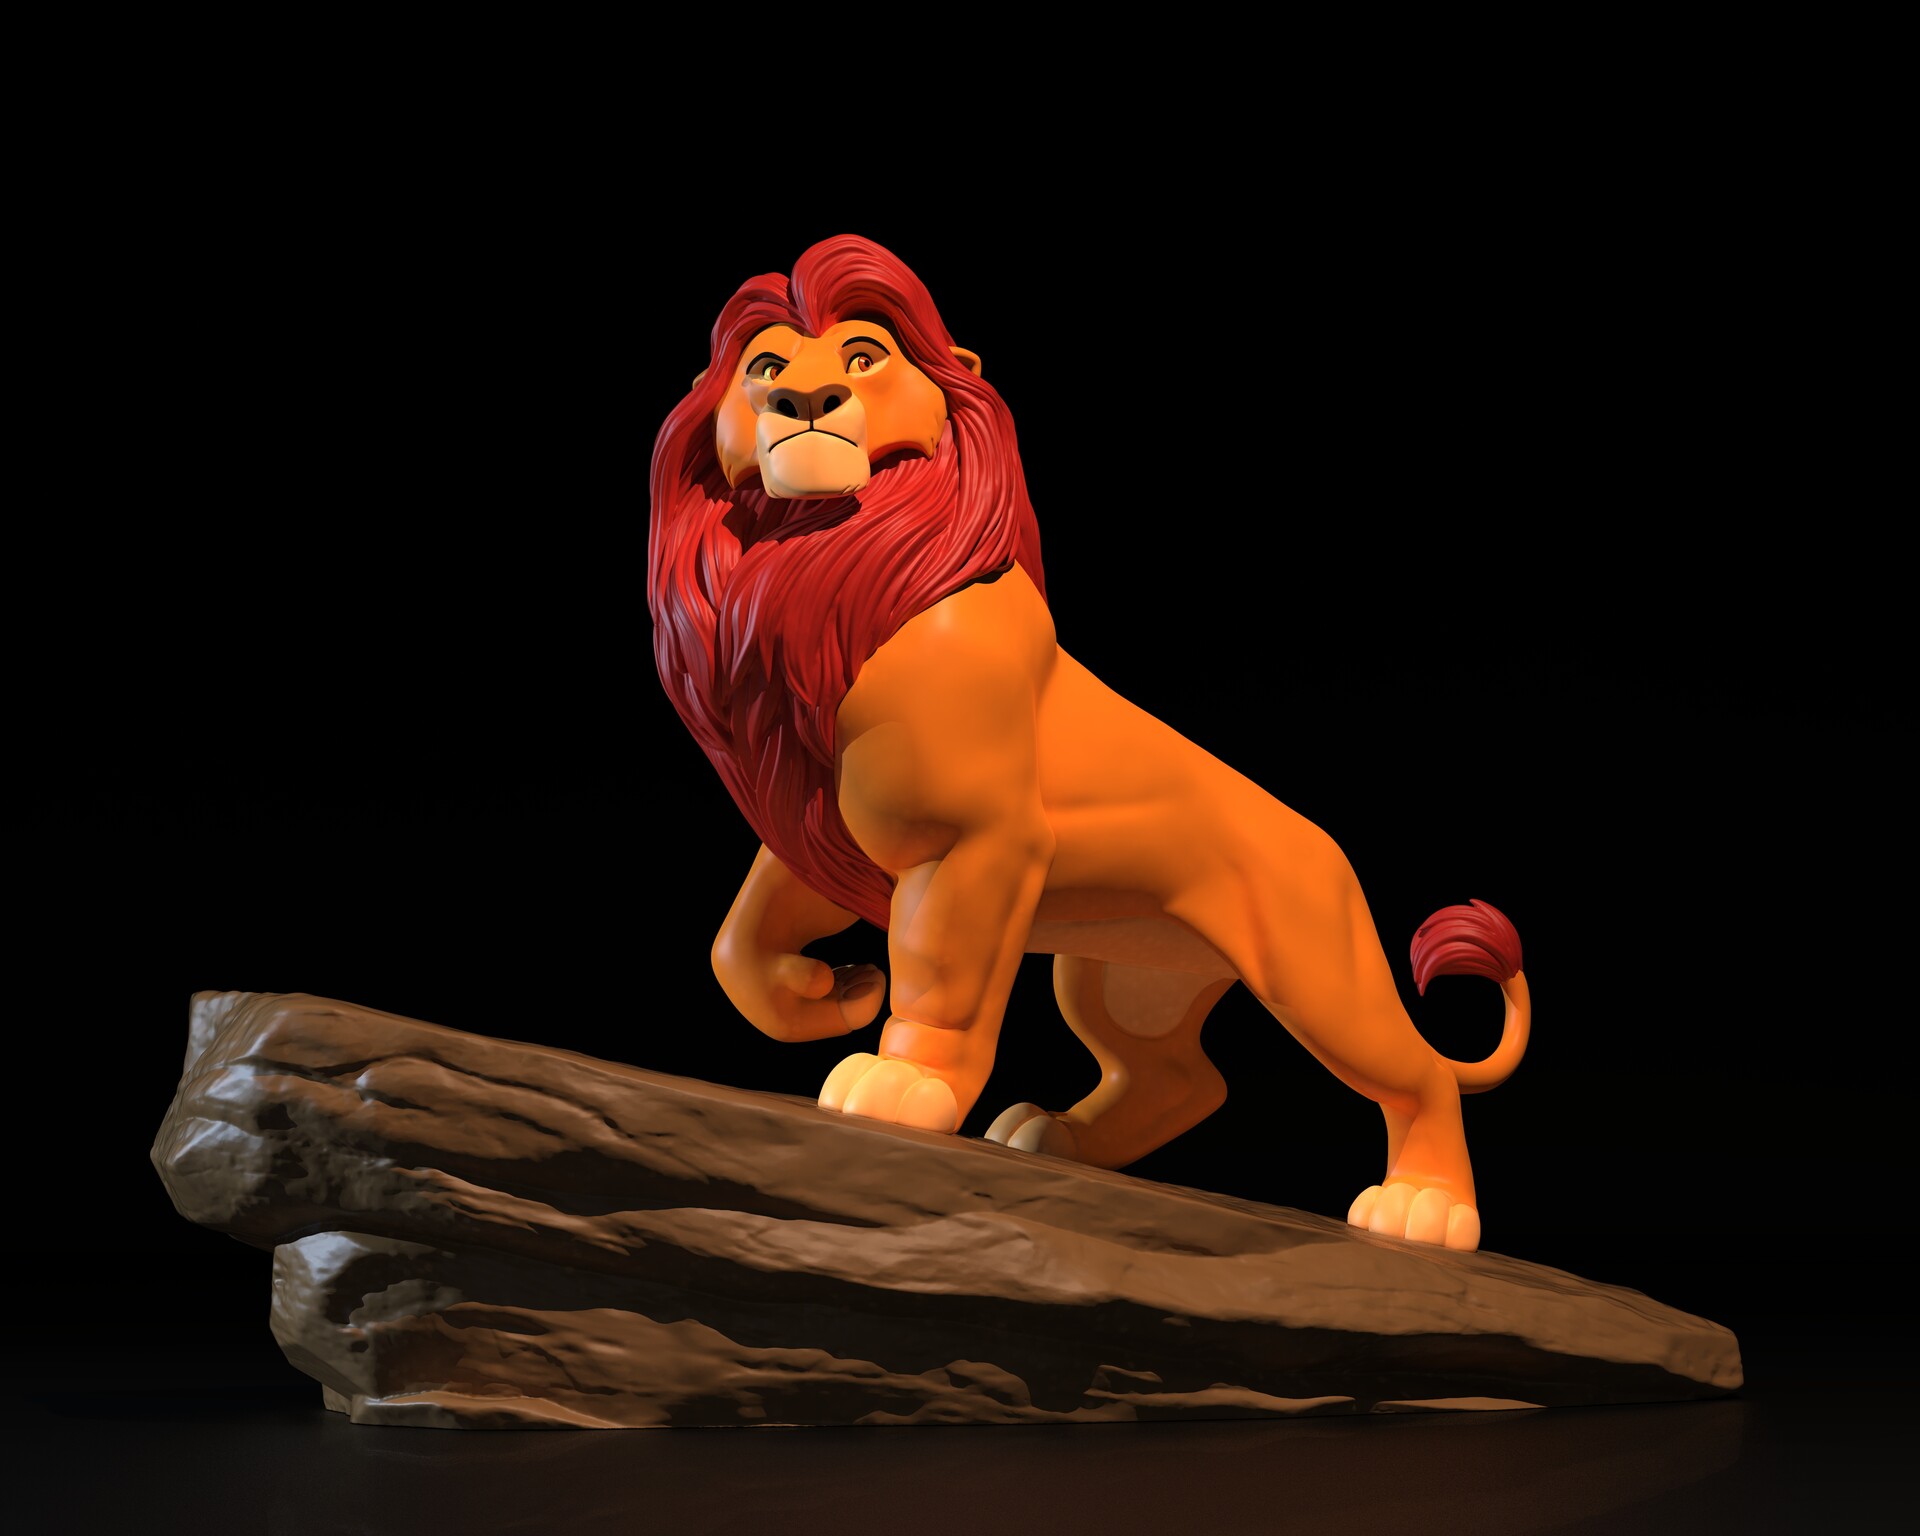 Daniel Silport - The Lion King Mufasa Statue Fan Art